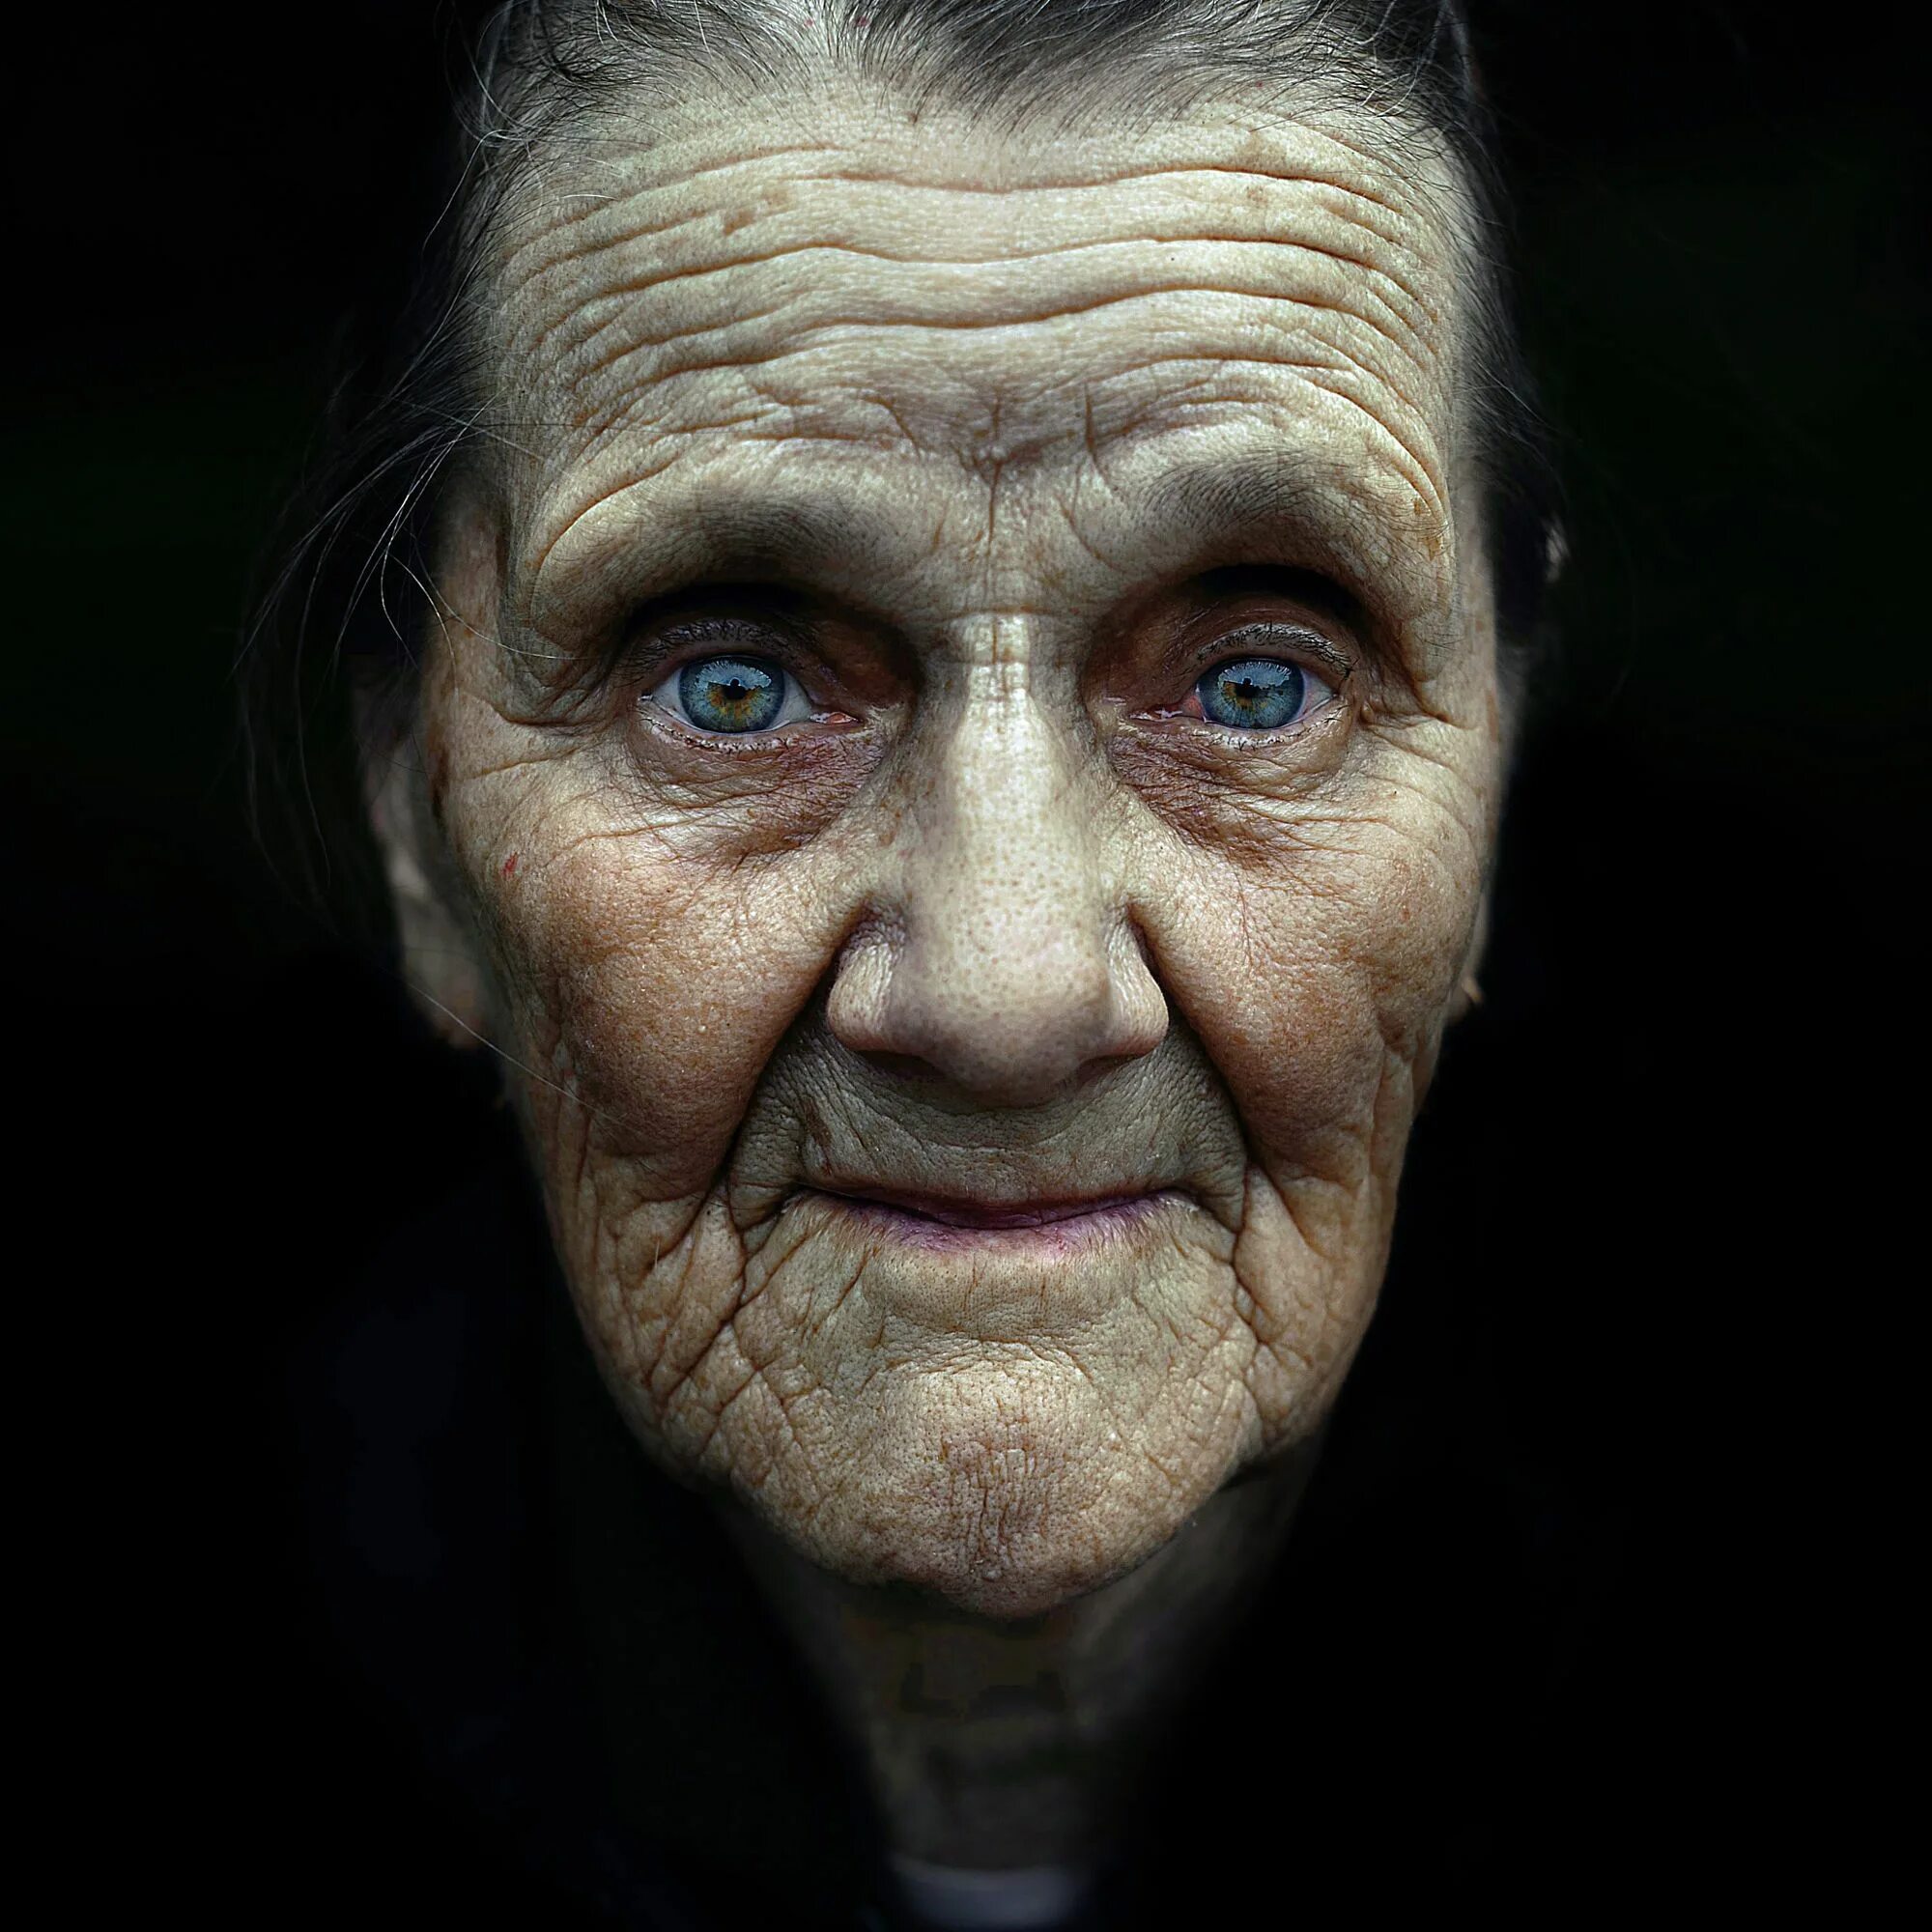 Картинка старше. Старческое лицо. Лицо старухи. Выразительный портрет. Выразительный фотопортрет.